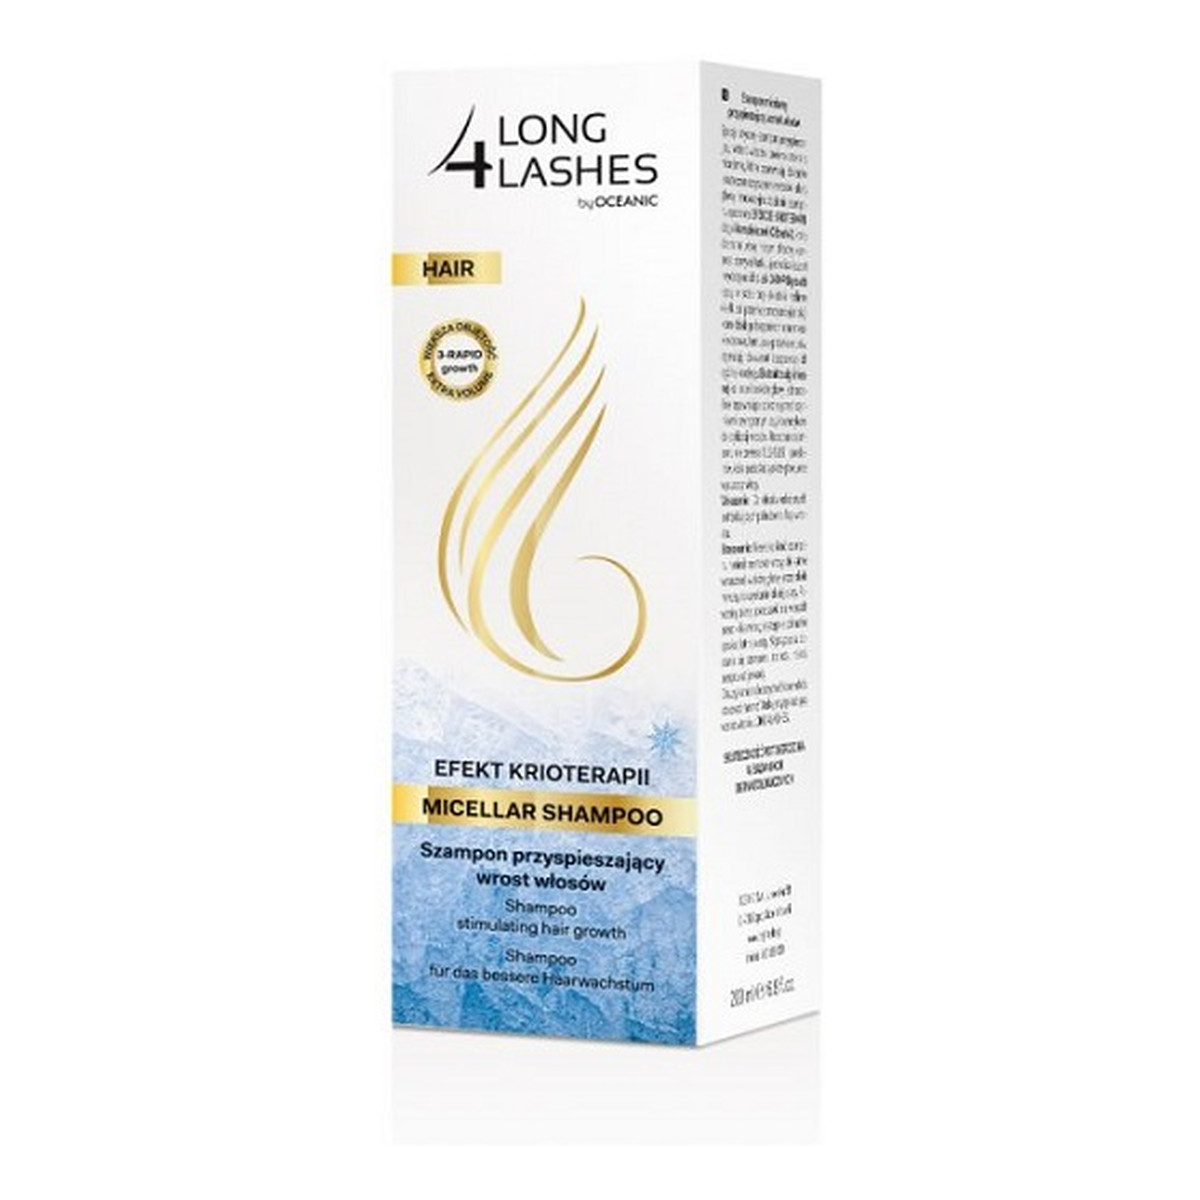 AA Long 4 Lashes Micellar Shampoo efekt krioterapii szampon przyspieszający wzrost włosów 200ml